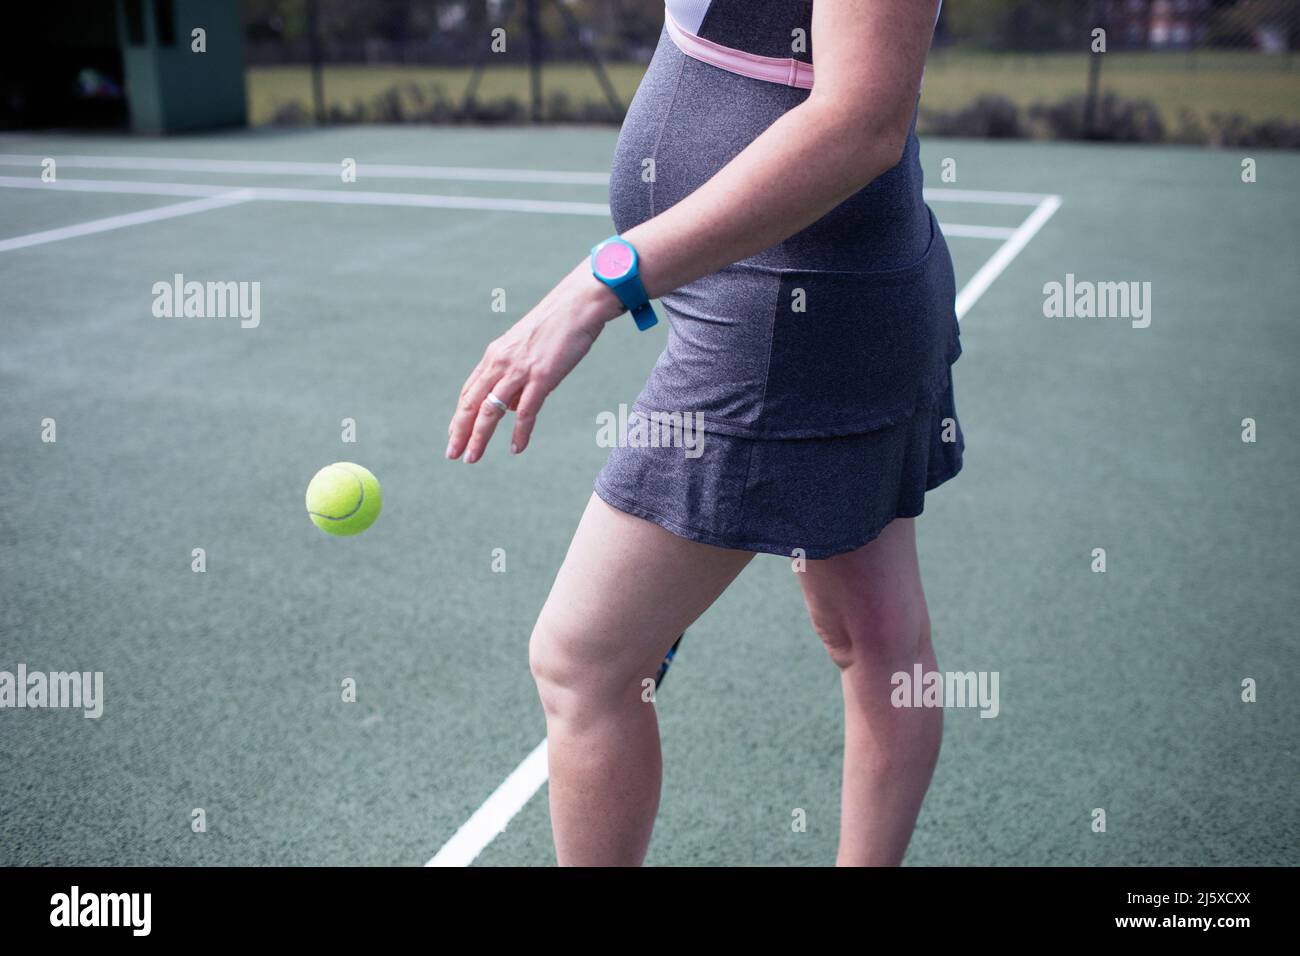 Femme enceinte qui rebondit sur un court de tennis Banque D'Images